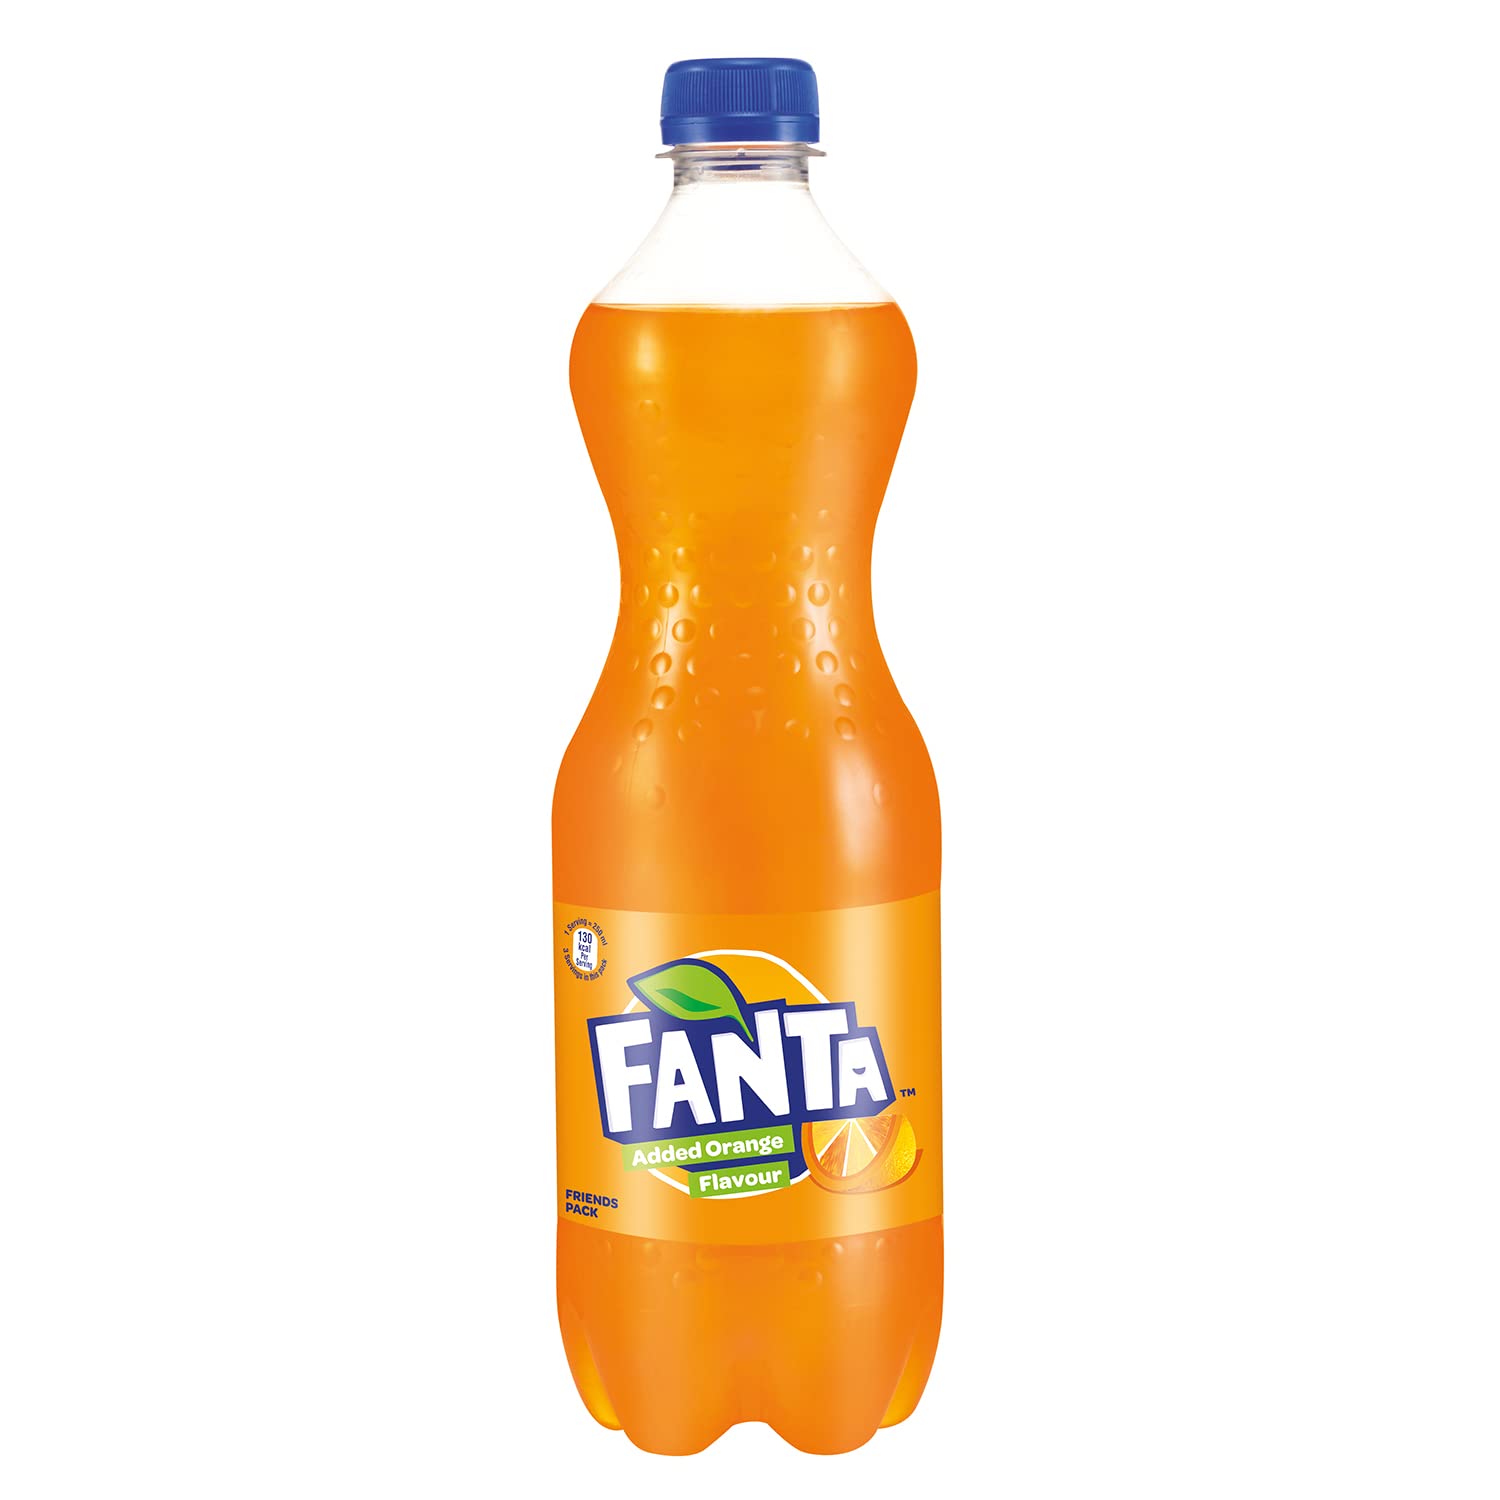 Fanta soft drink brands